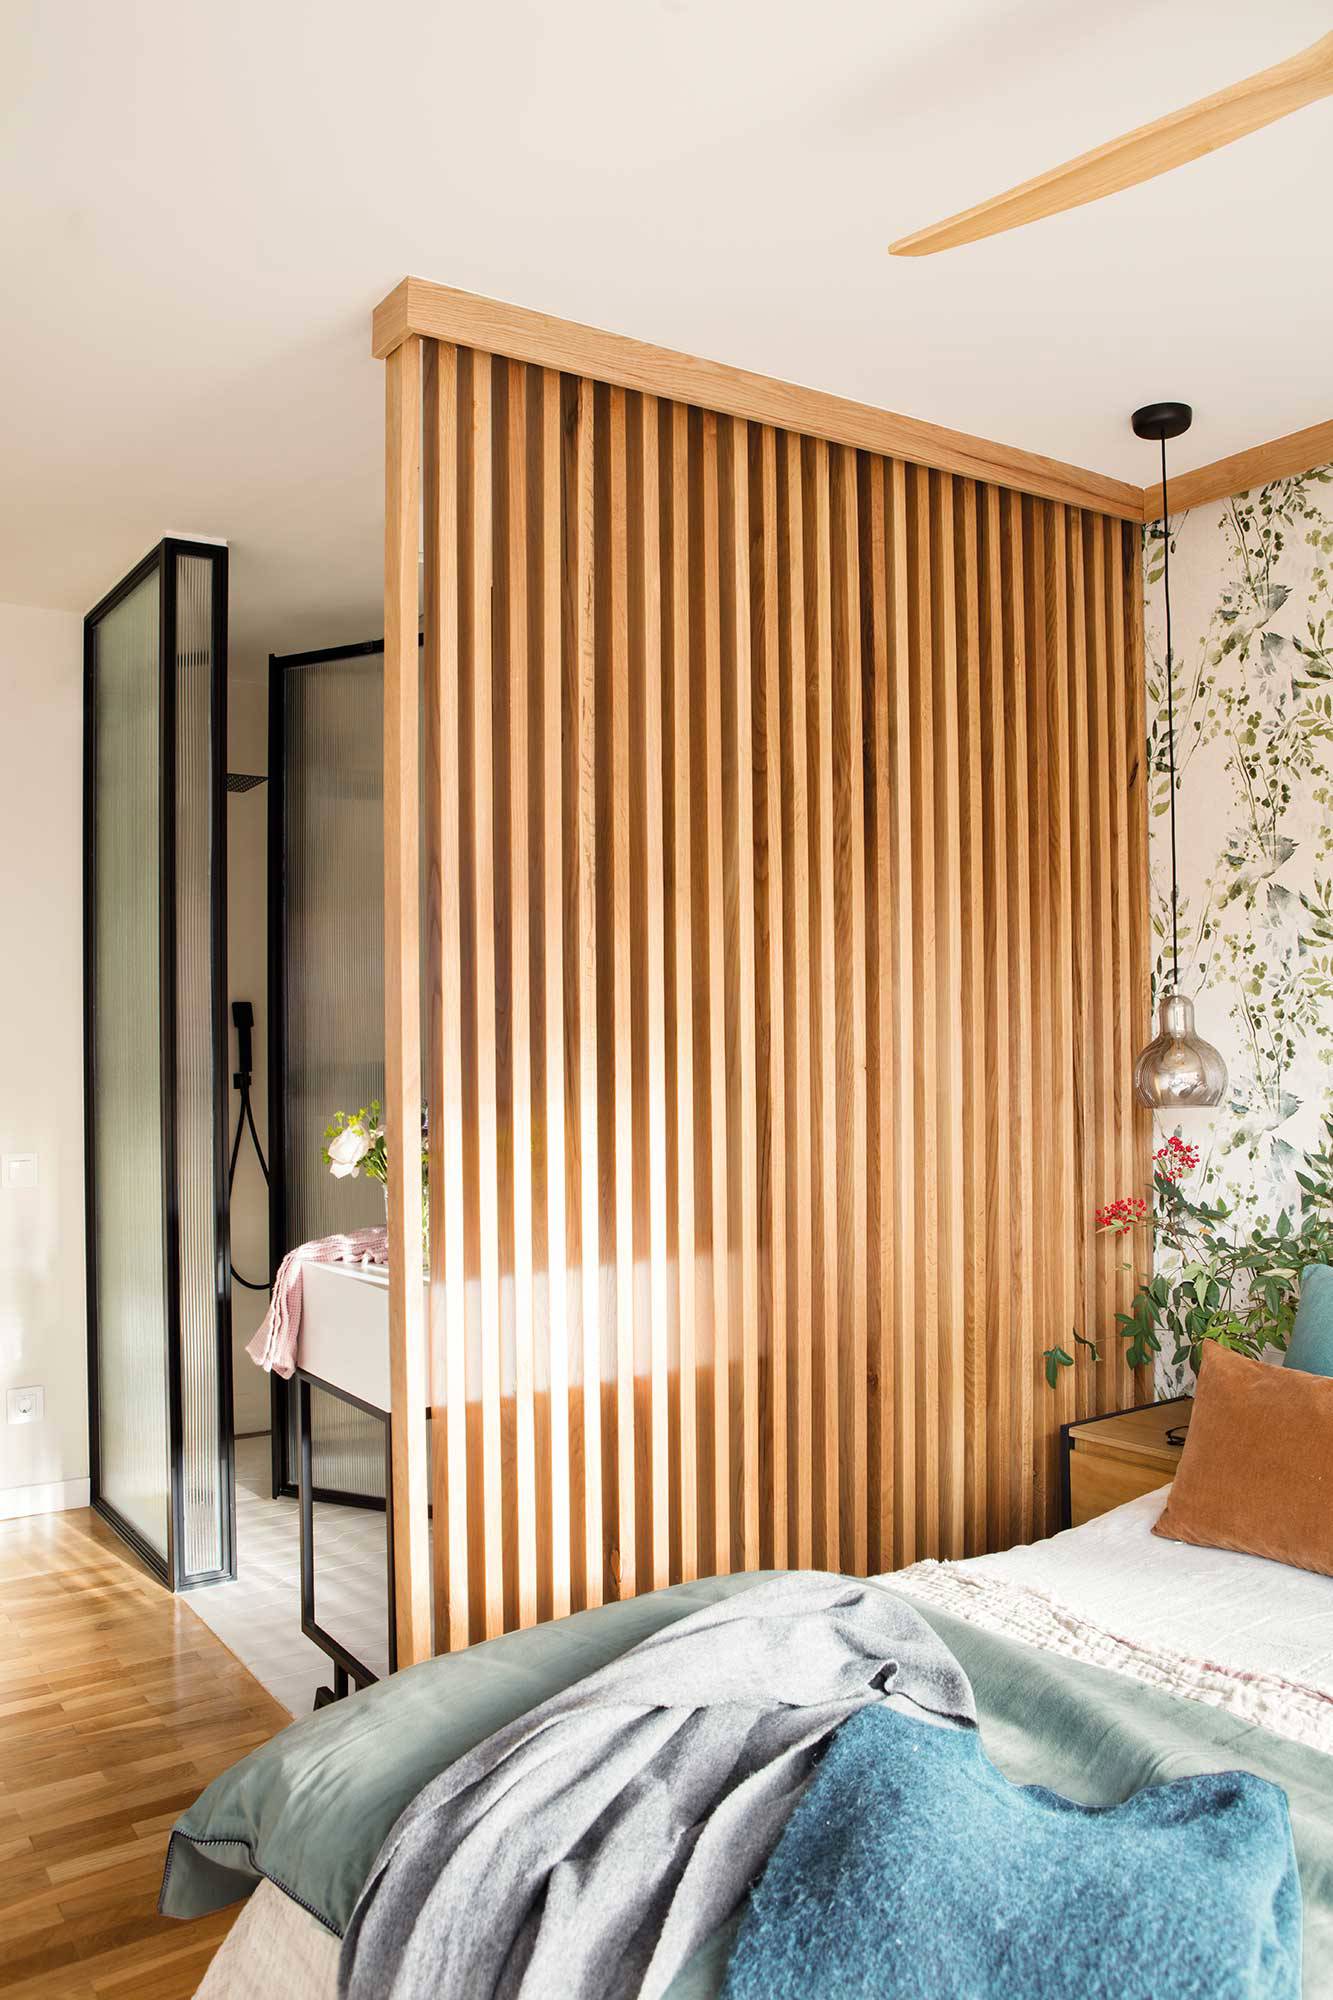 Dormitorio con baño integrado y celosía de madera como elemento separador de ambientes.